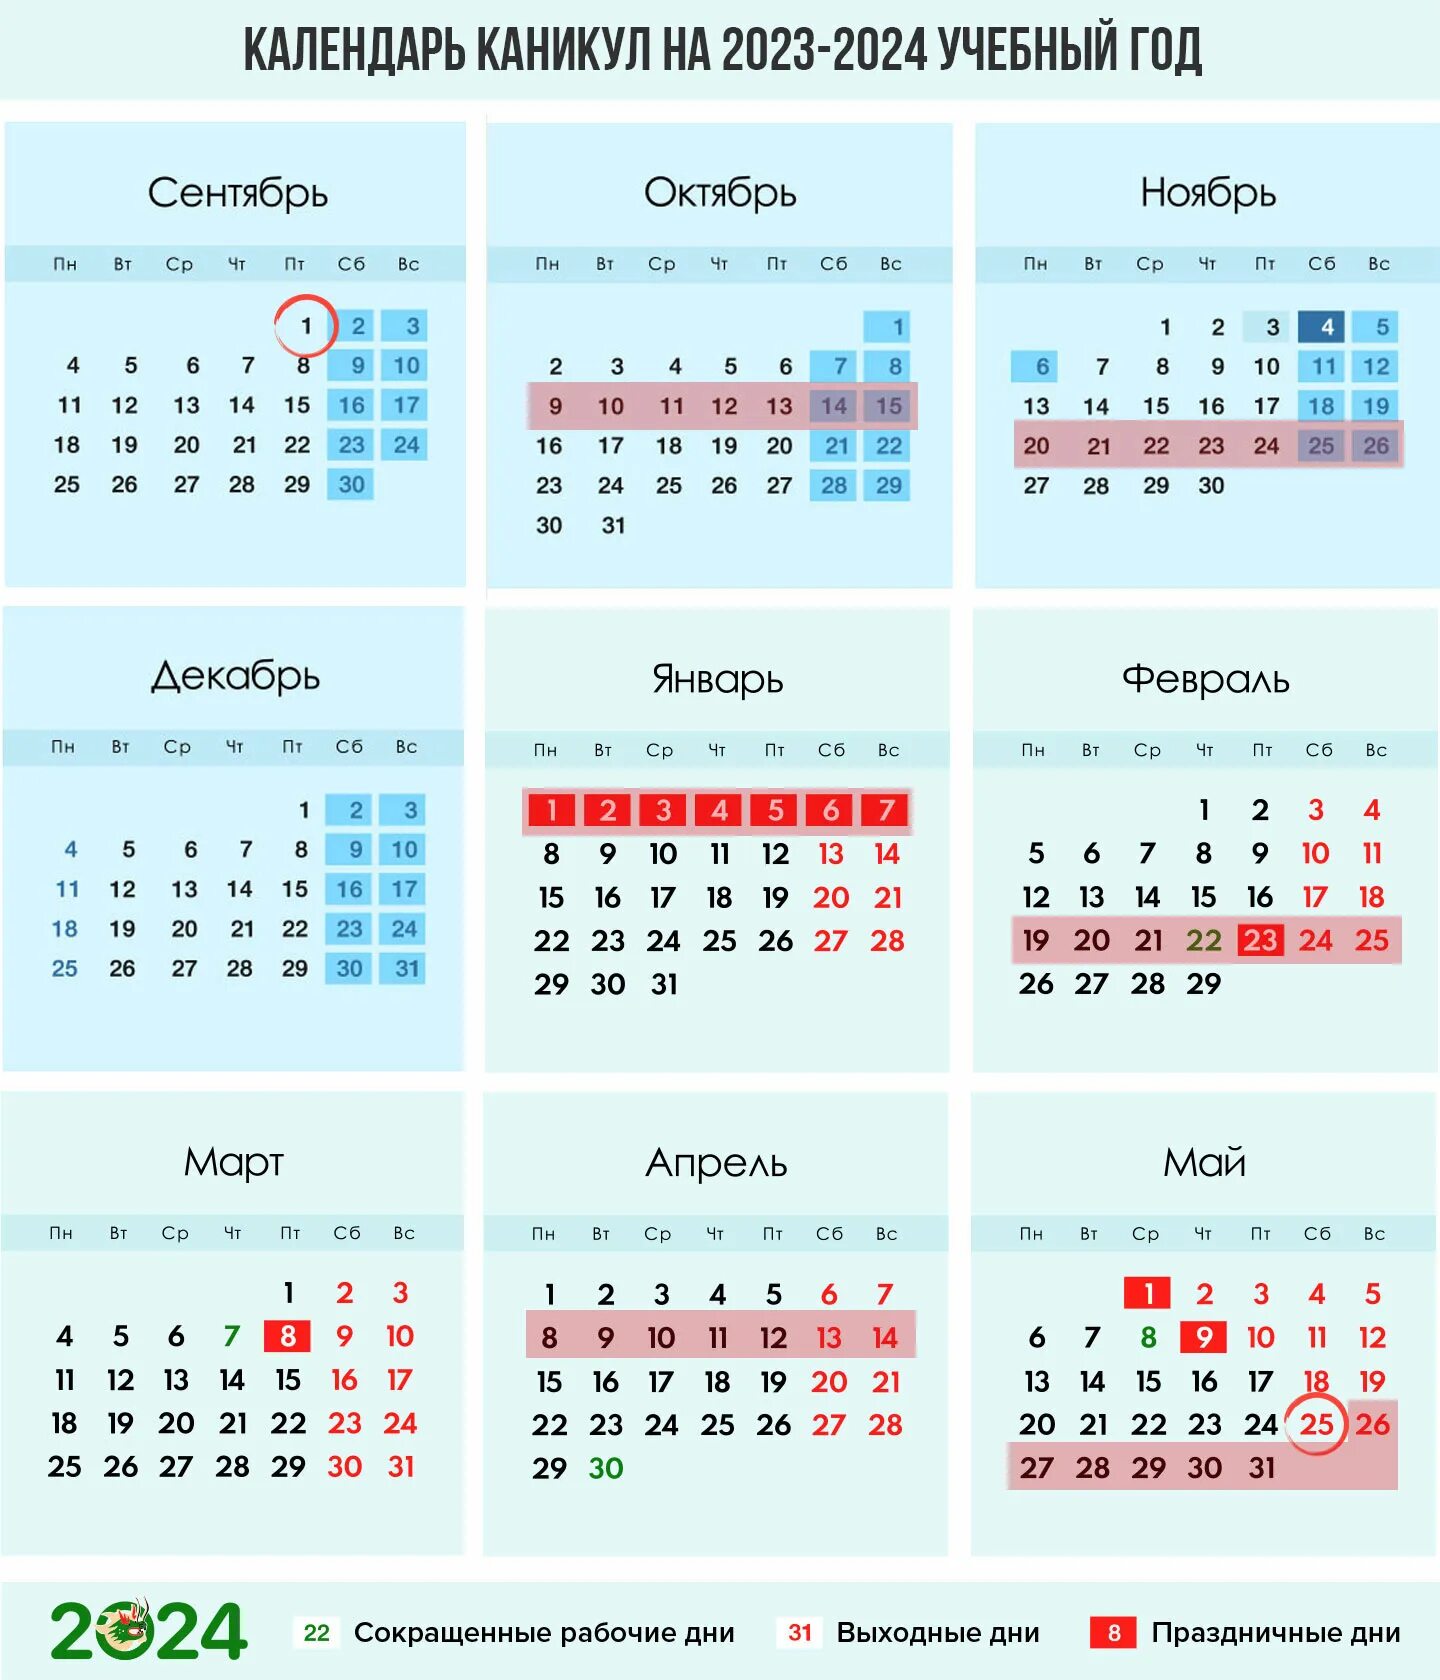 Учебный календарь на 2023-2024 учебный год. Календарь каникул 2023. Учебный календарь 2023-2024 год с каникулами. Календарь на 2023 год с каникулами.